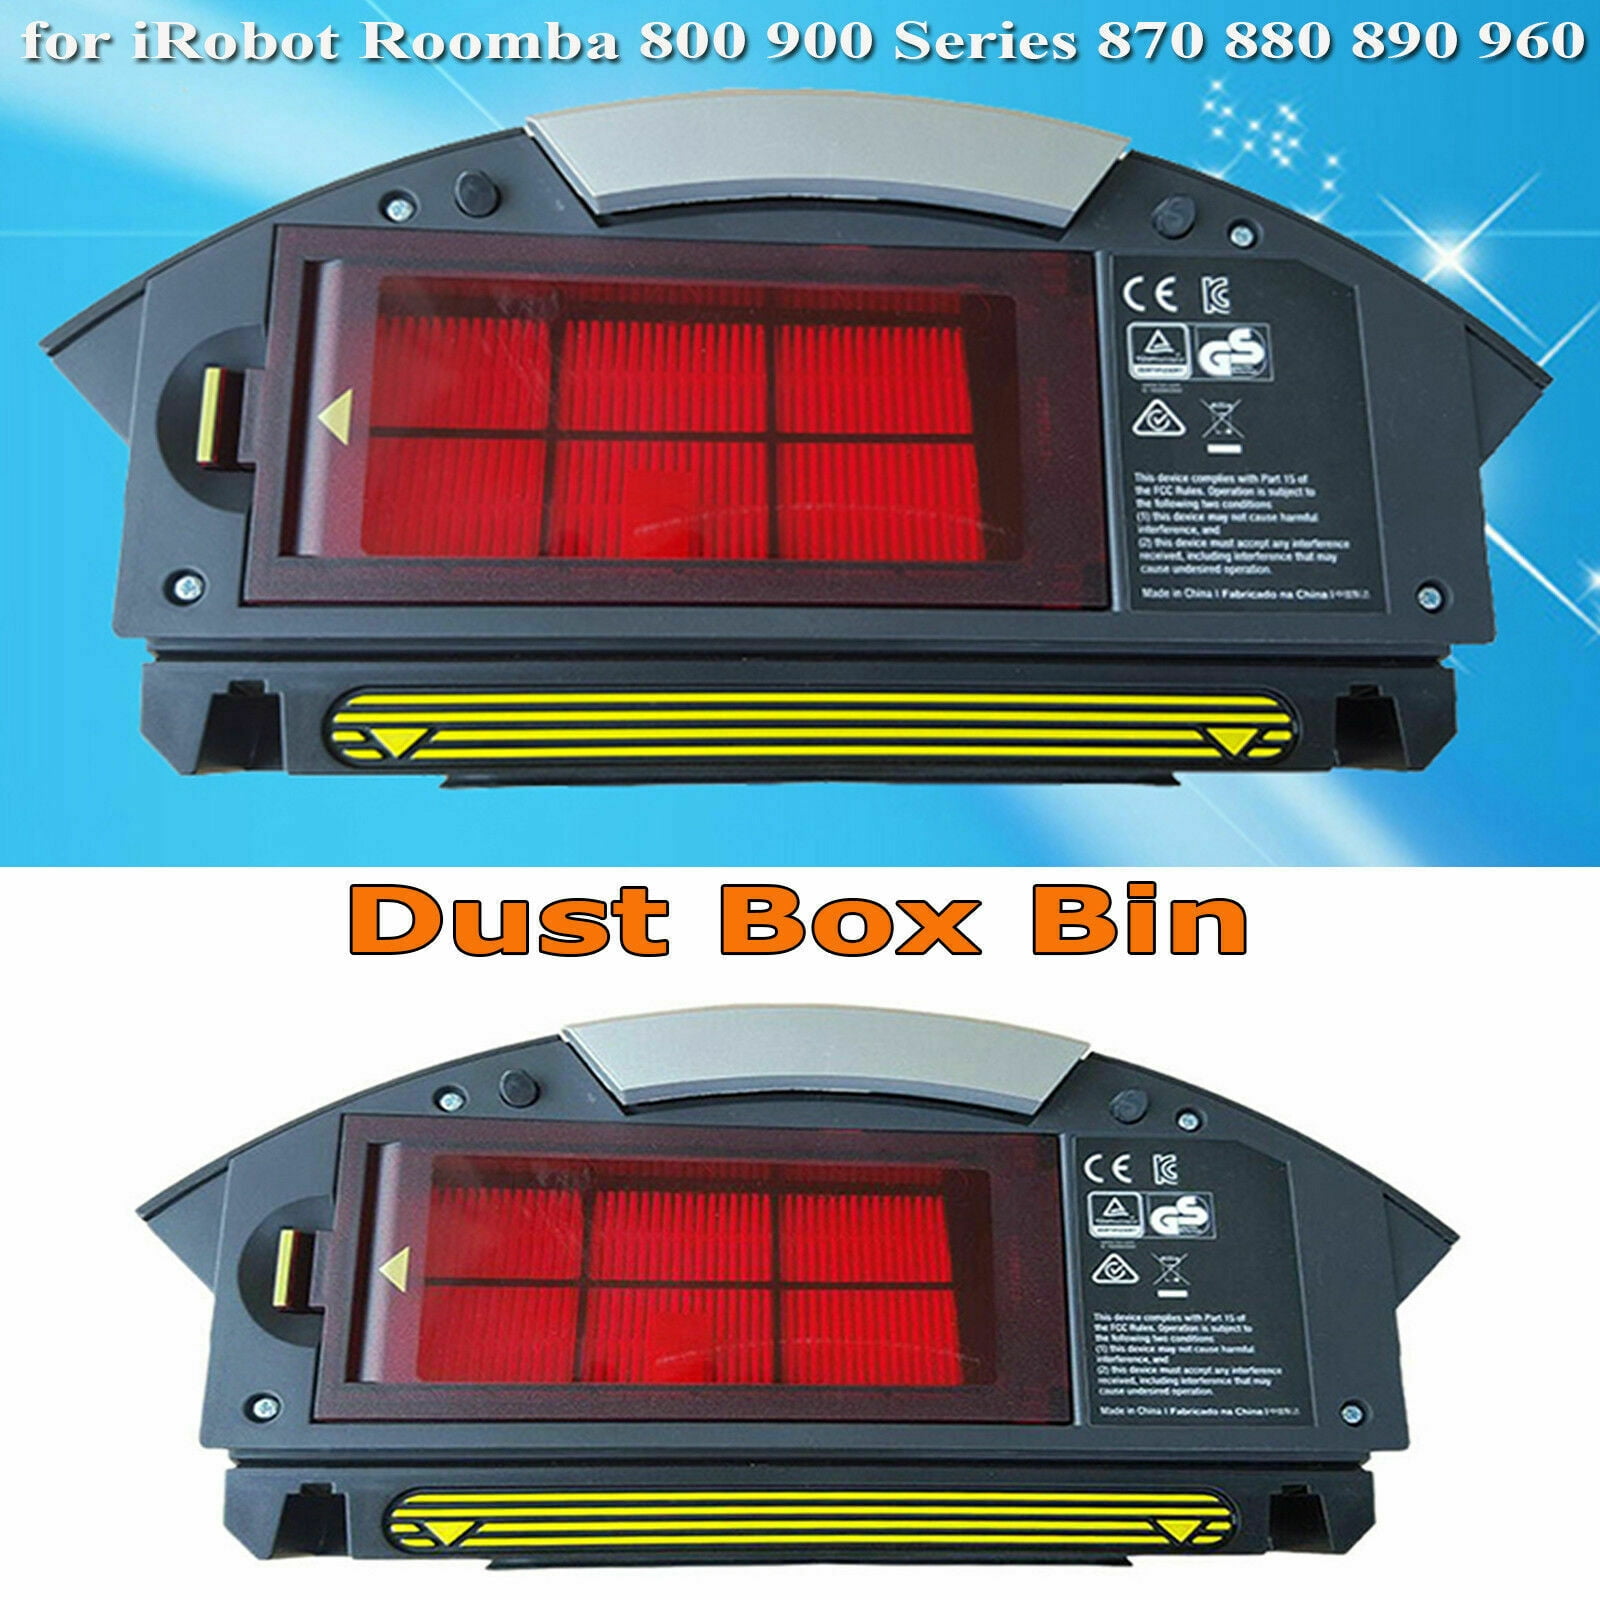 Dust Box Bin Door For Irobot Roomba 800 900 Series Vaccum Cleaner Accessories A 